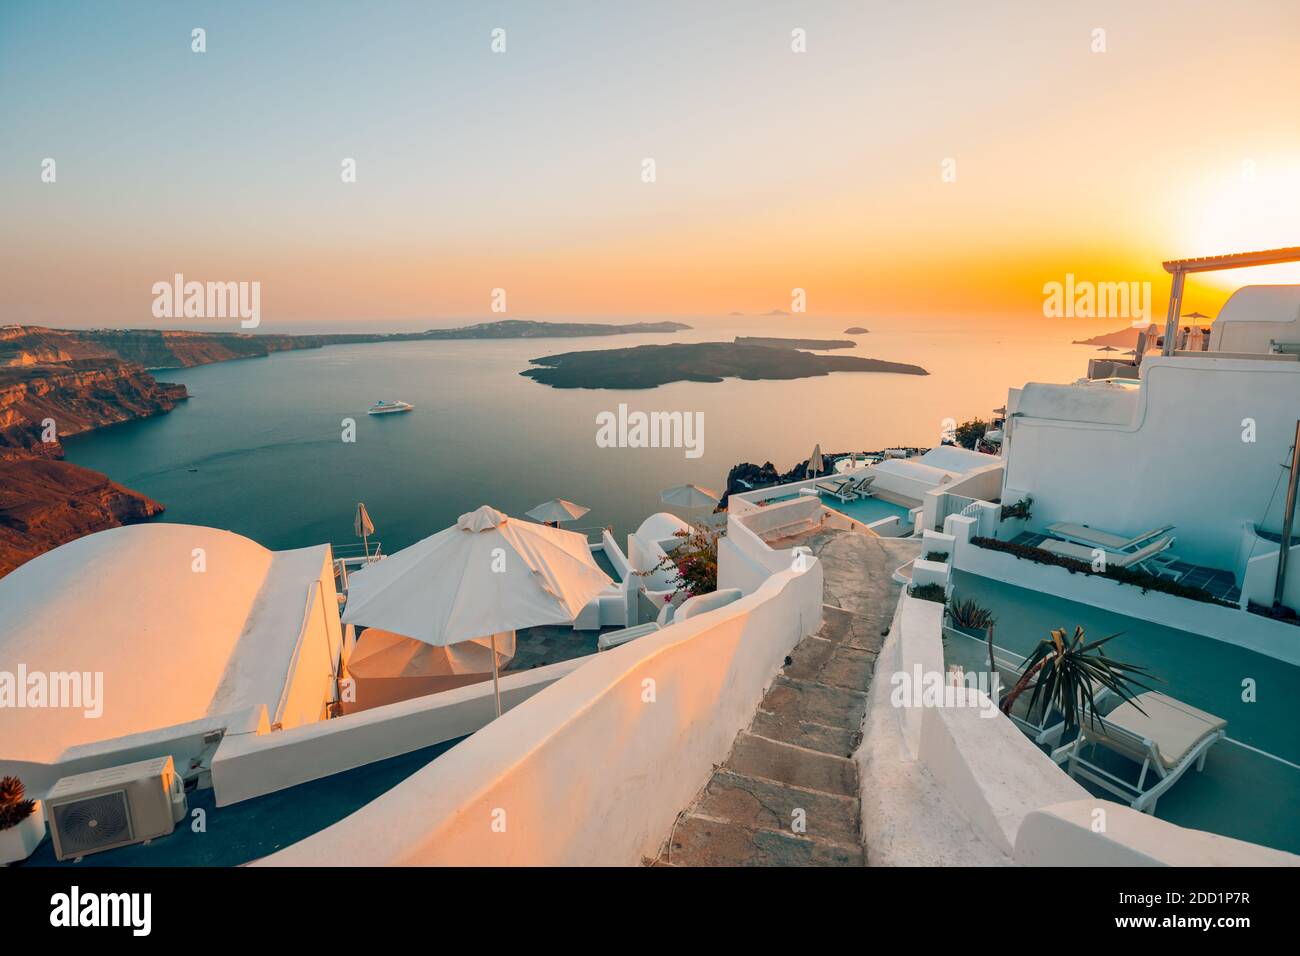 Une vue incroyable en soirée sur l'architecture blanche et la lumière romantique du coucher de soleil, Santorini, romance d'été, destination lune de miel. Concept de voyage, vacances Banque D'Images